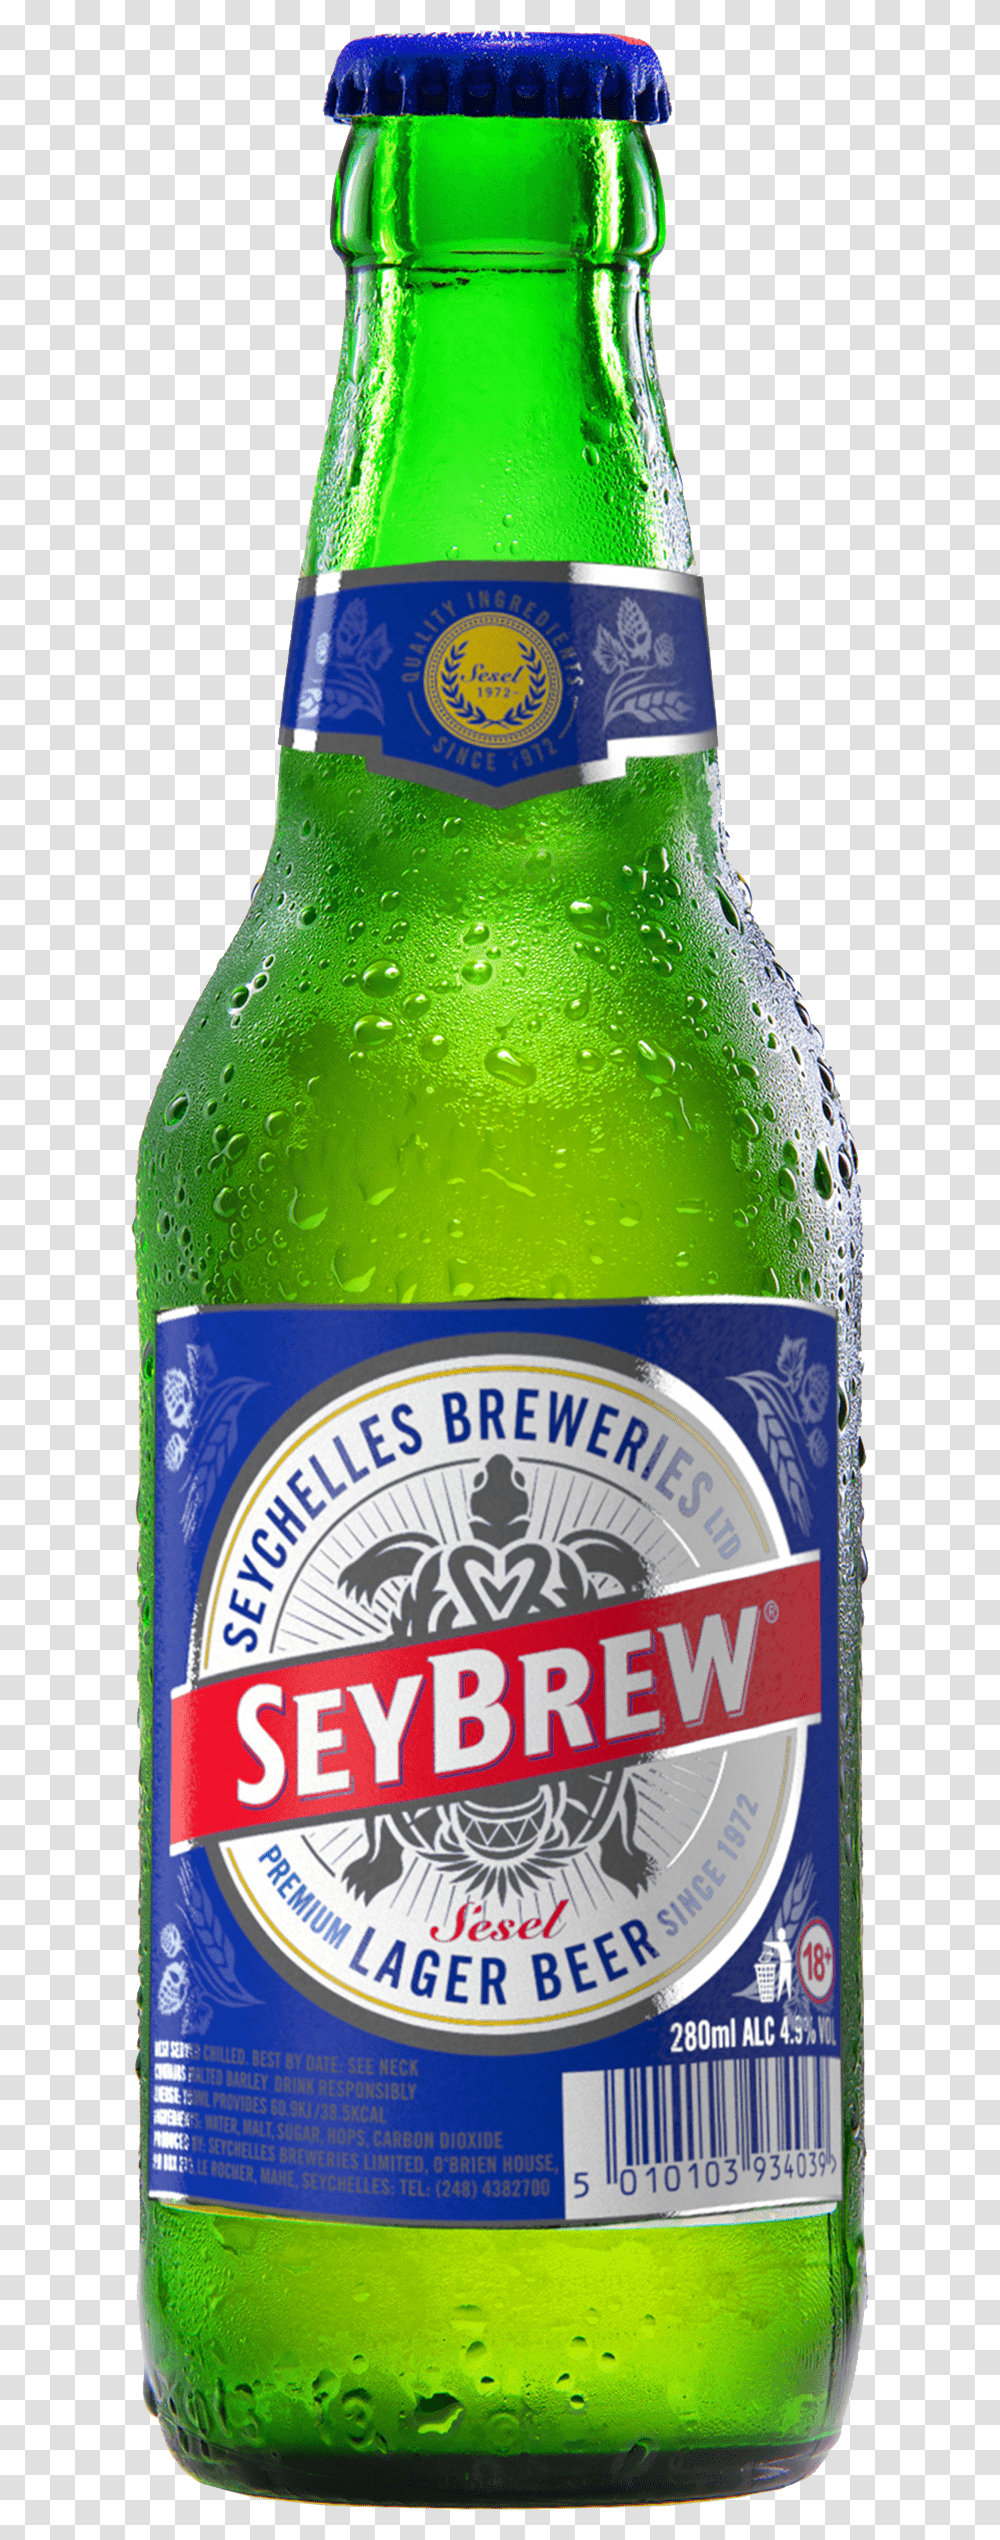 Bottle Of Seybrew Seychelles Beer, Alcohol, Beverage, Drink, Beer Bottle Transparent Png